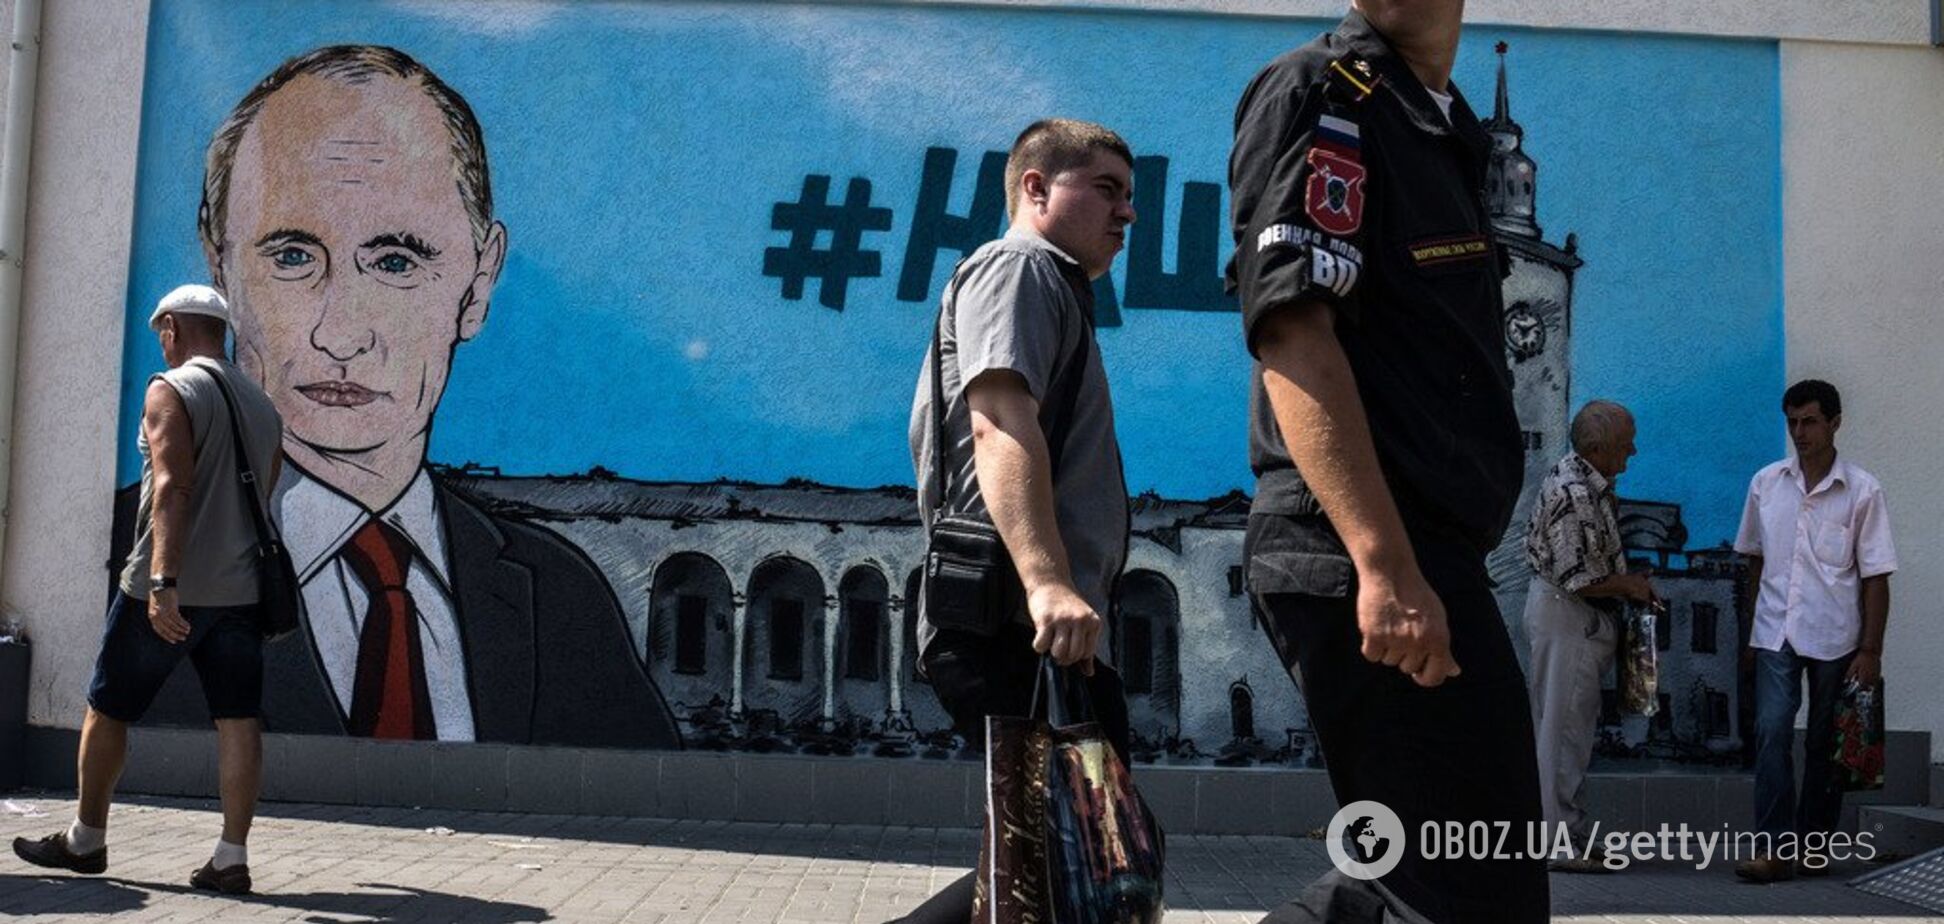 'Это средневековье': в Крыму забили тревогу из-за проблем с банками